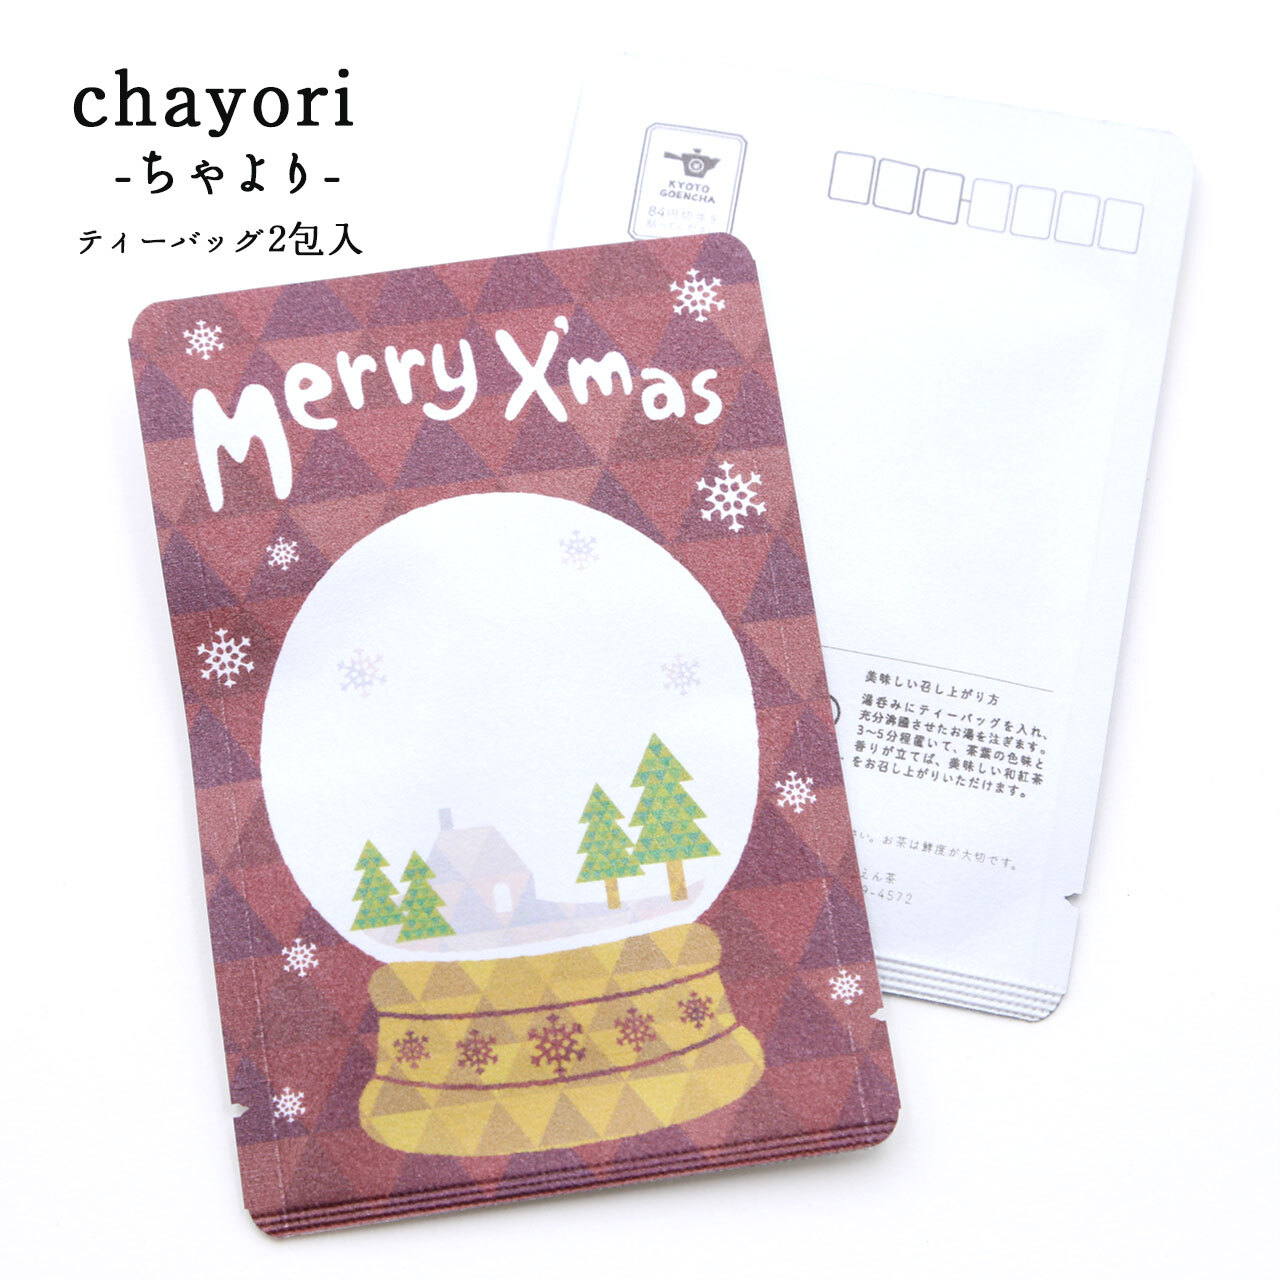 スノードーム Merry X Mas Chayori 和紅茶ティーバッグ2包入 お茶入りクリスマスカード 京都ぎょくろのごえん茶 京都から おいしいたのしいお茶ギフトをお届けいたします